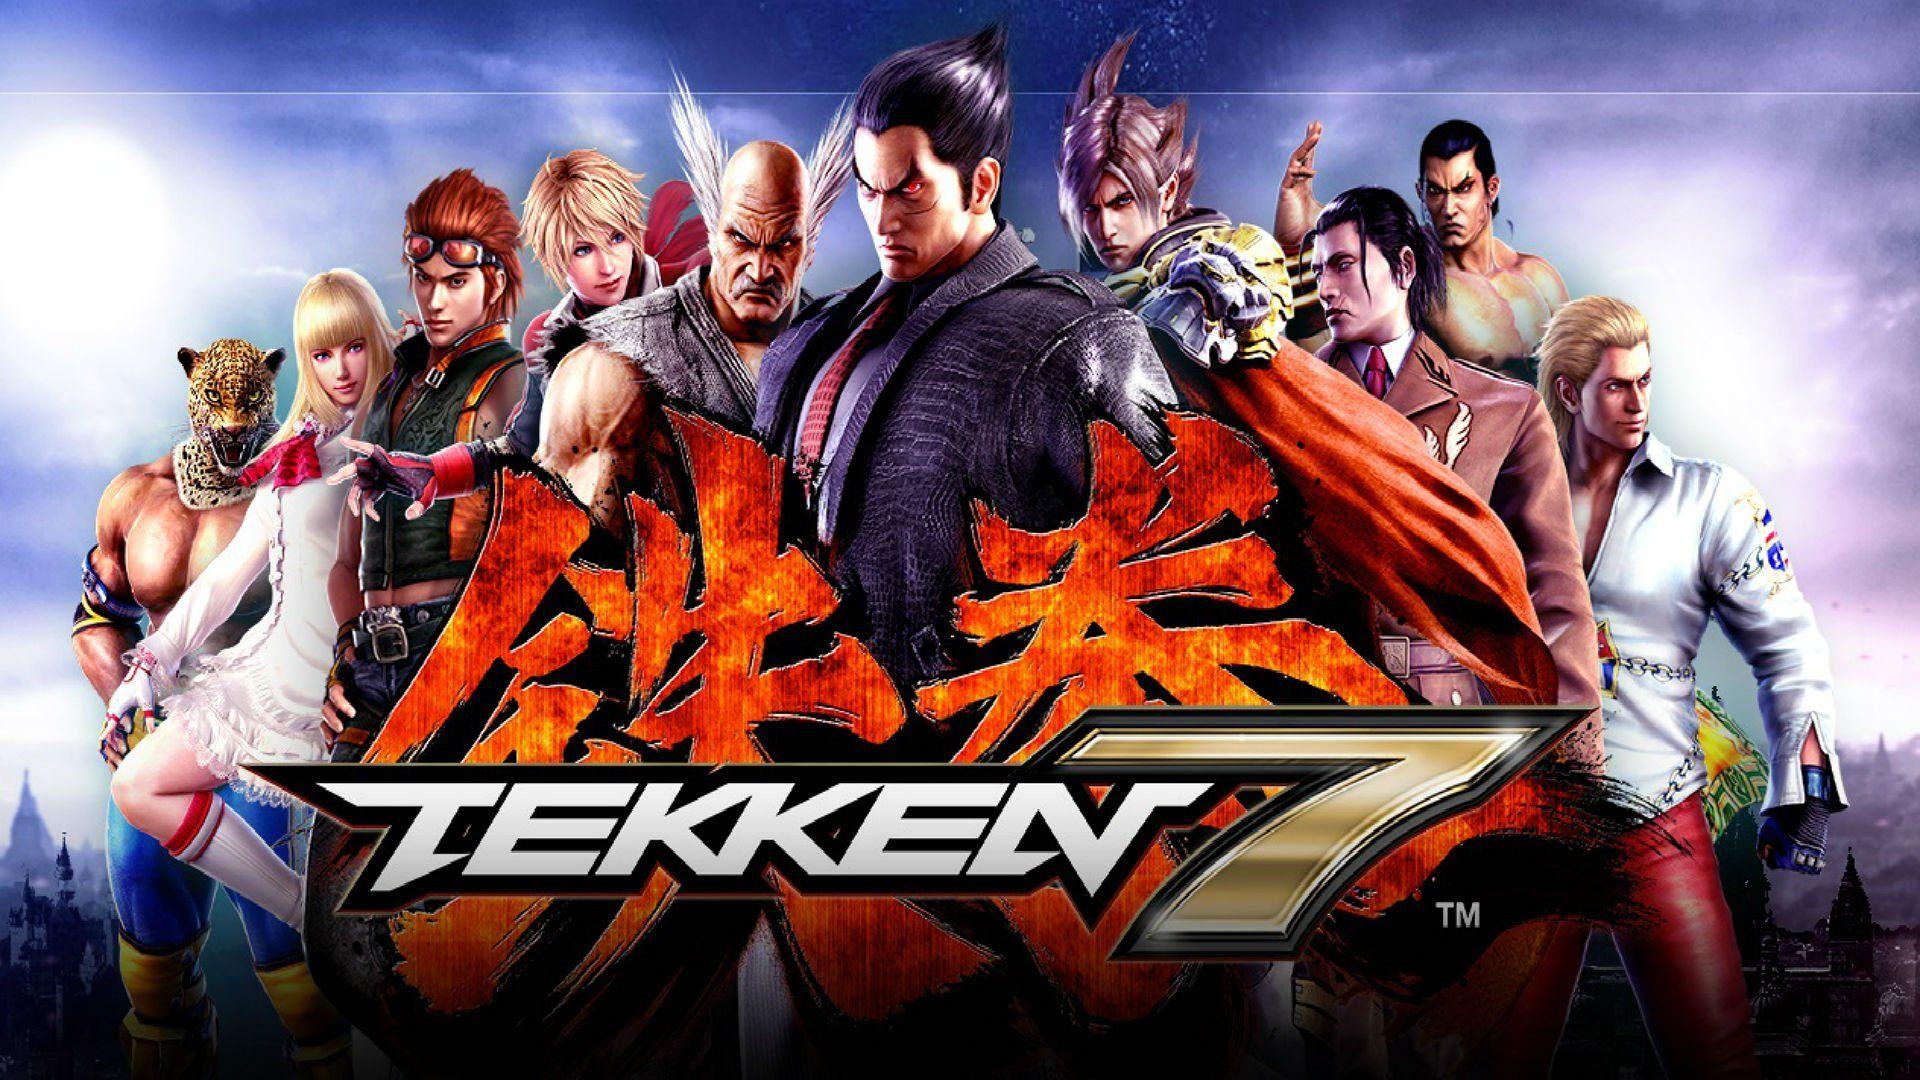 Tekken 7 HD wallpaper free download